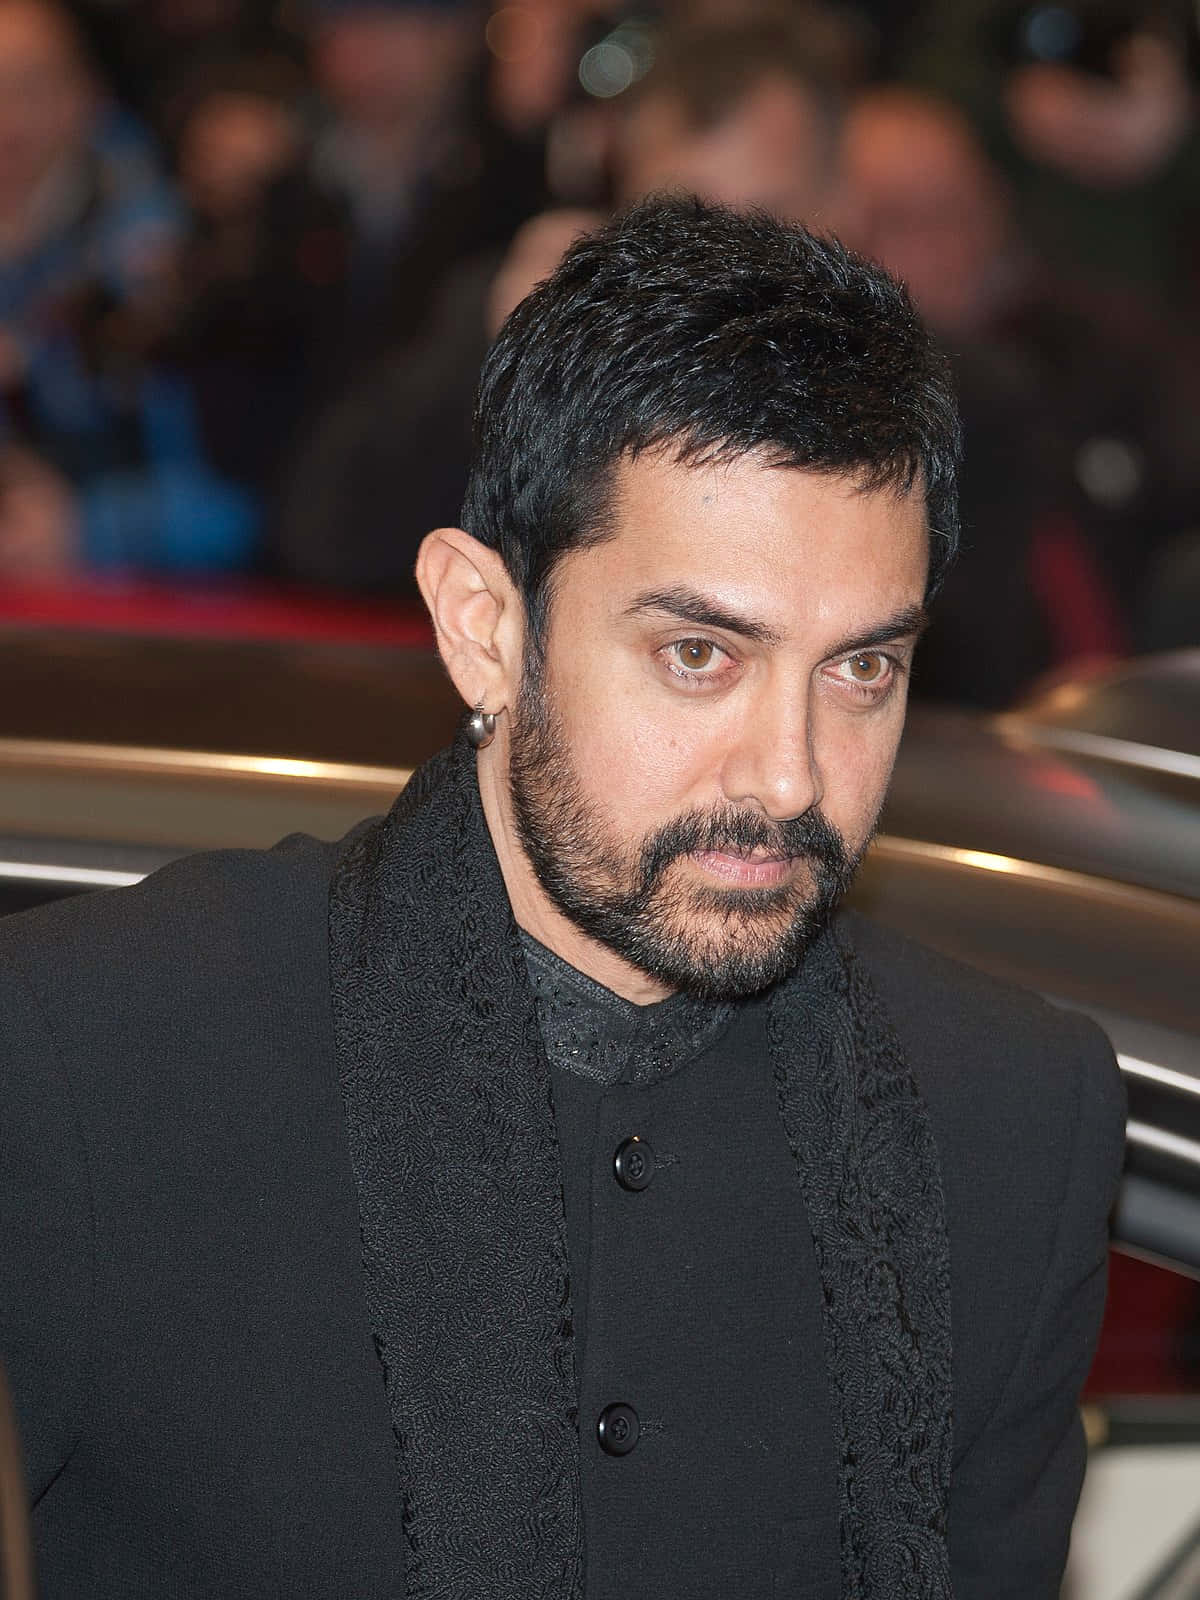 Aamirkhan In Seiner Ikonischen Rolle Als Bhuvan Im Klassischen Indischen Film 